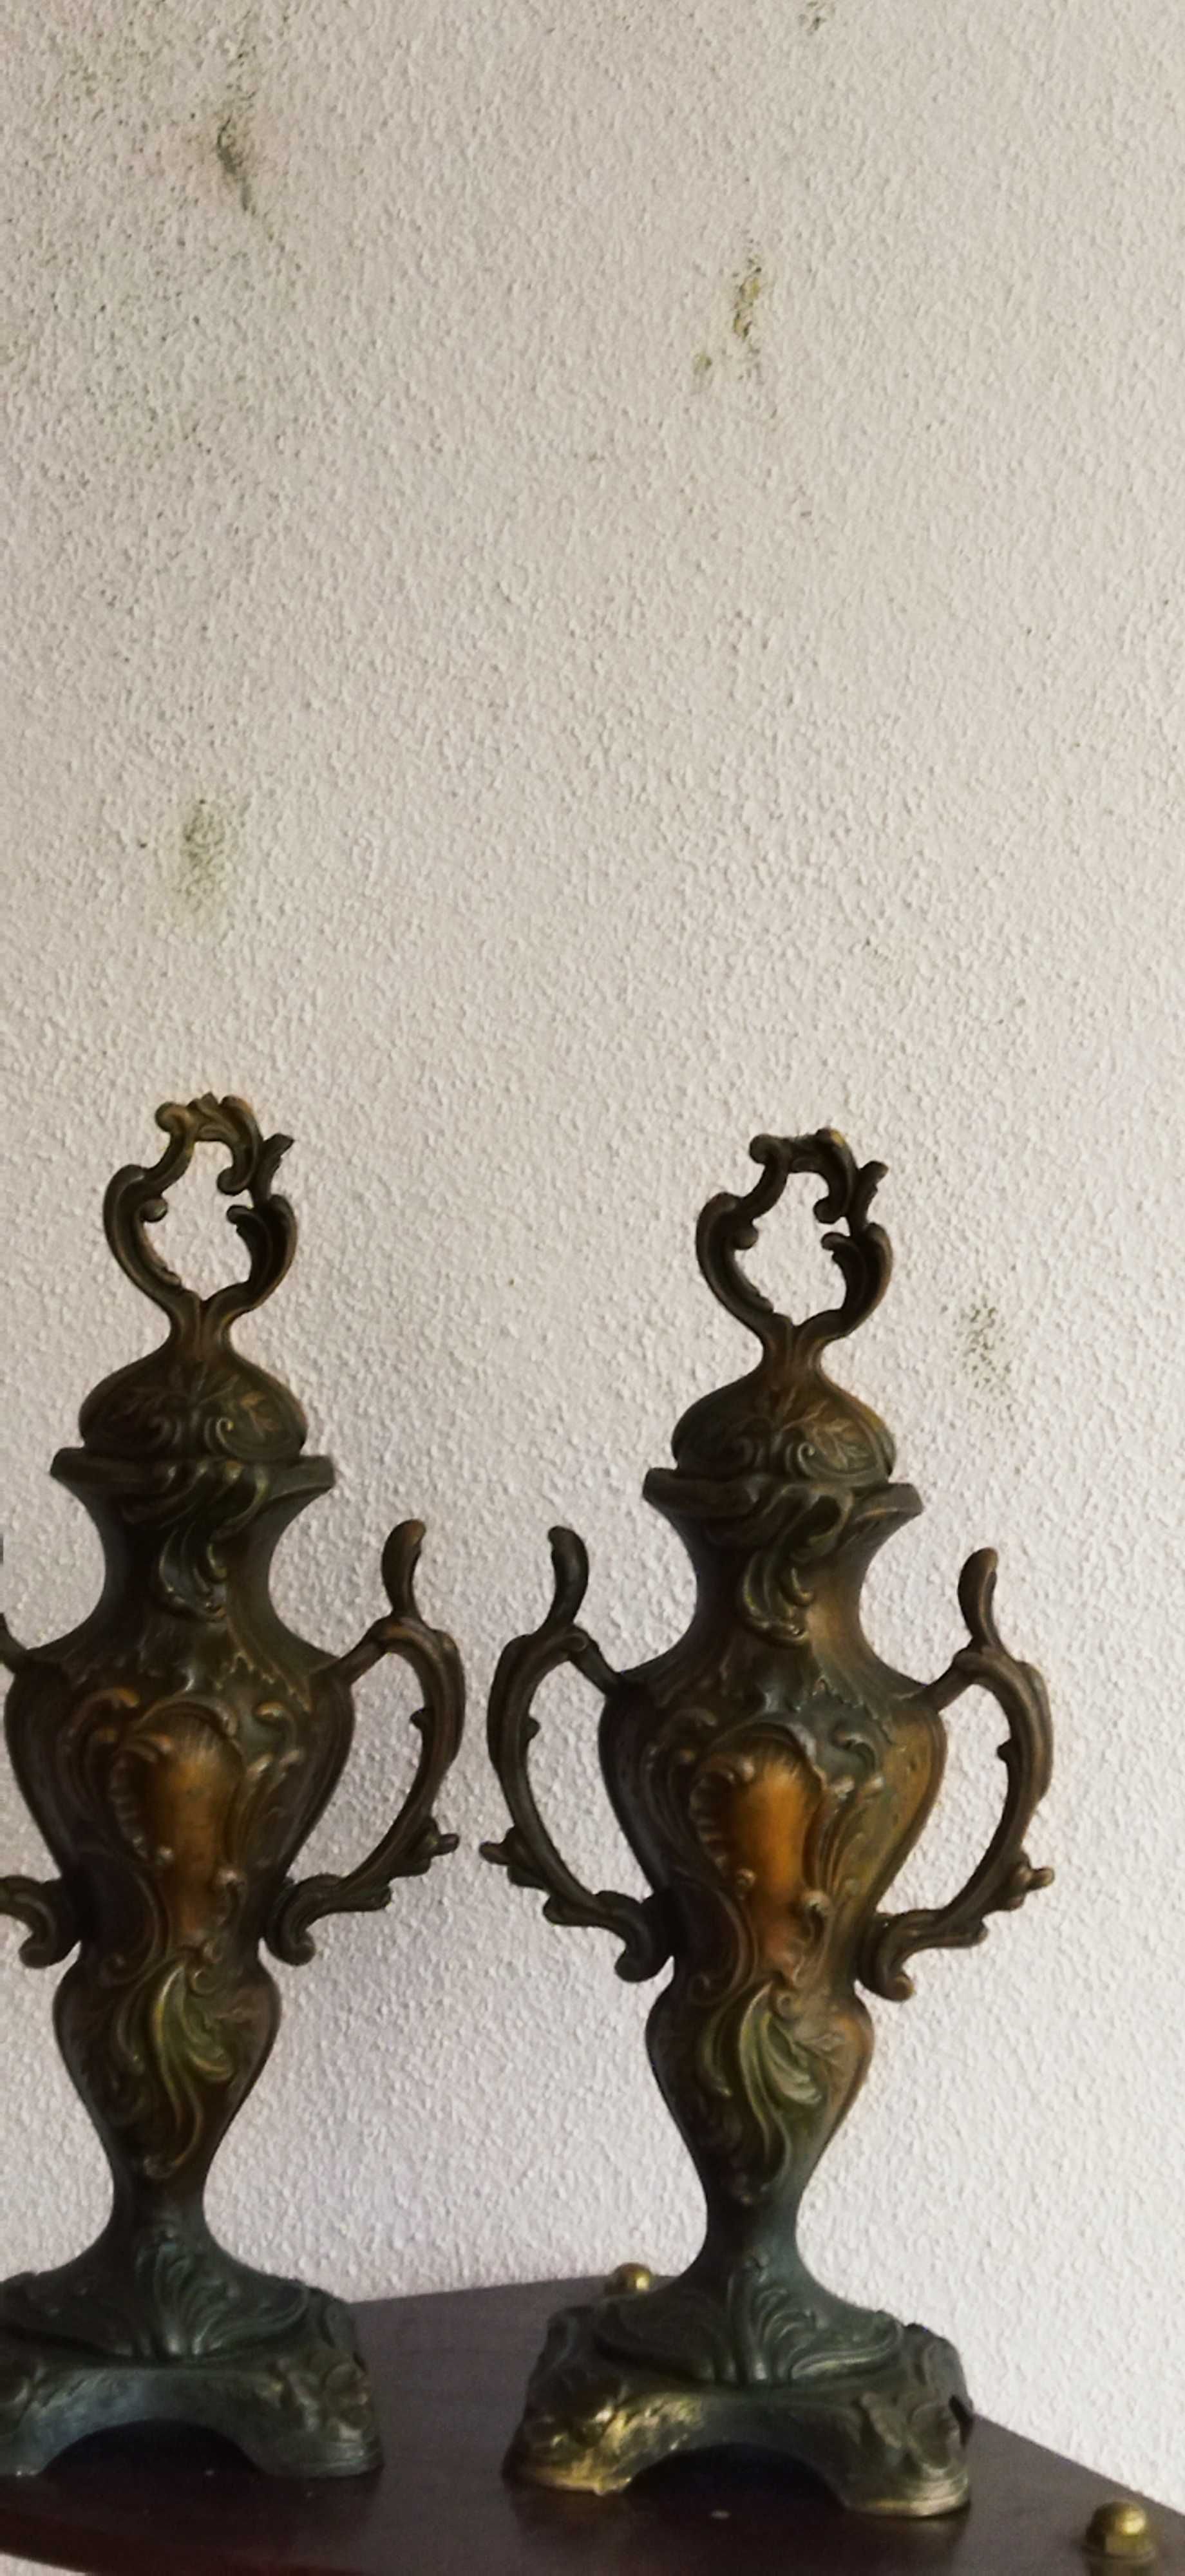 2 вазы старинные.Антикварные.Пара.Шпиатр.Франция 19 век